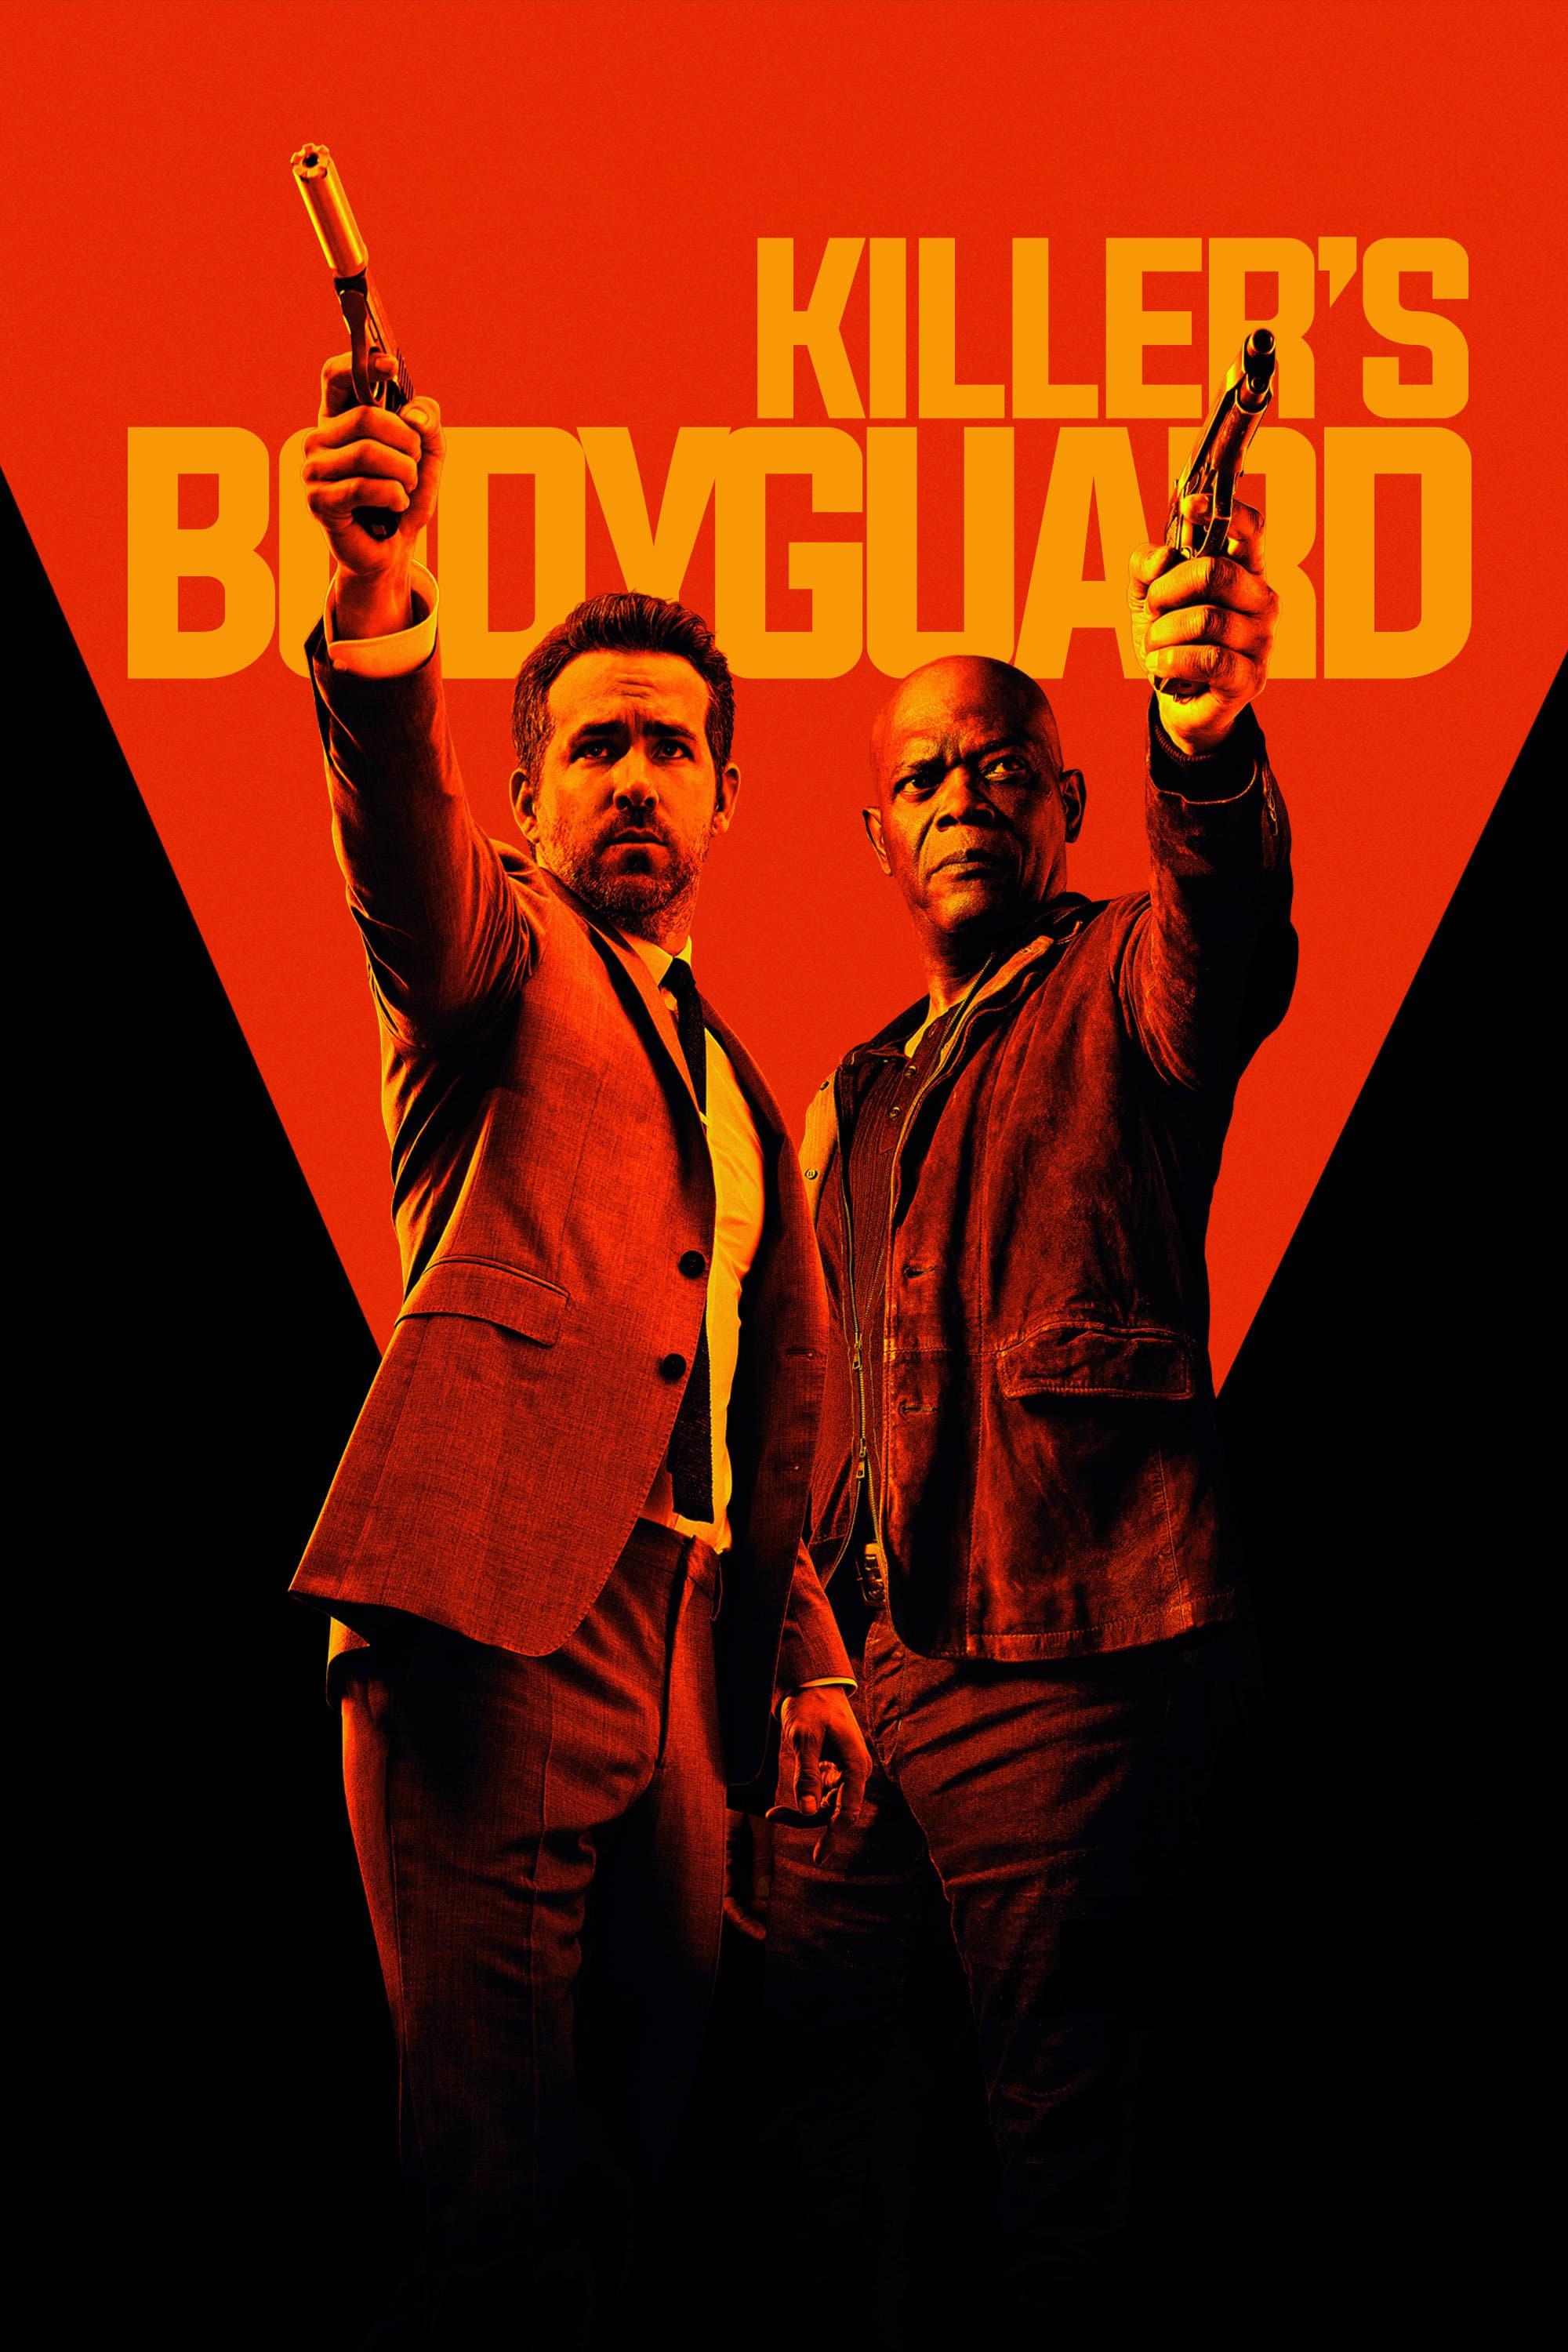 Killer's Bodyguard poster